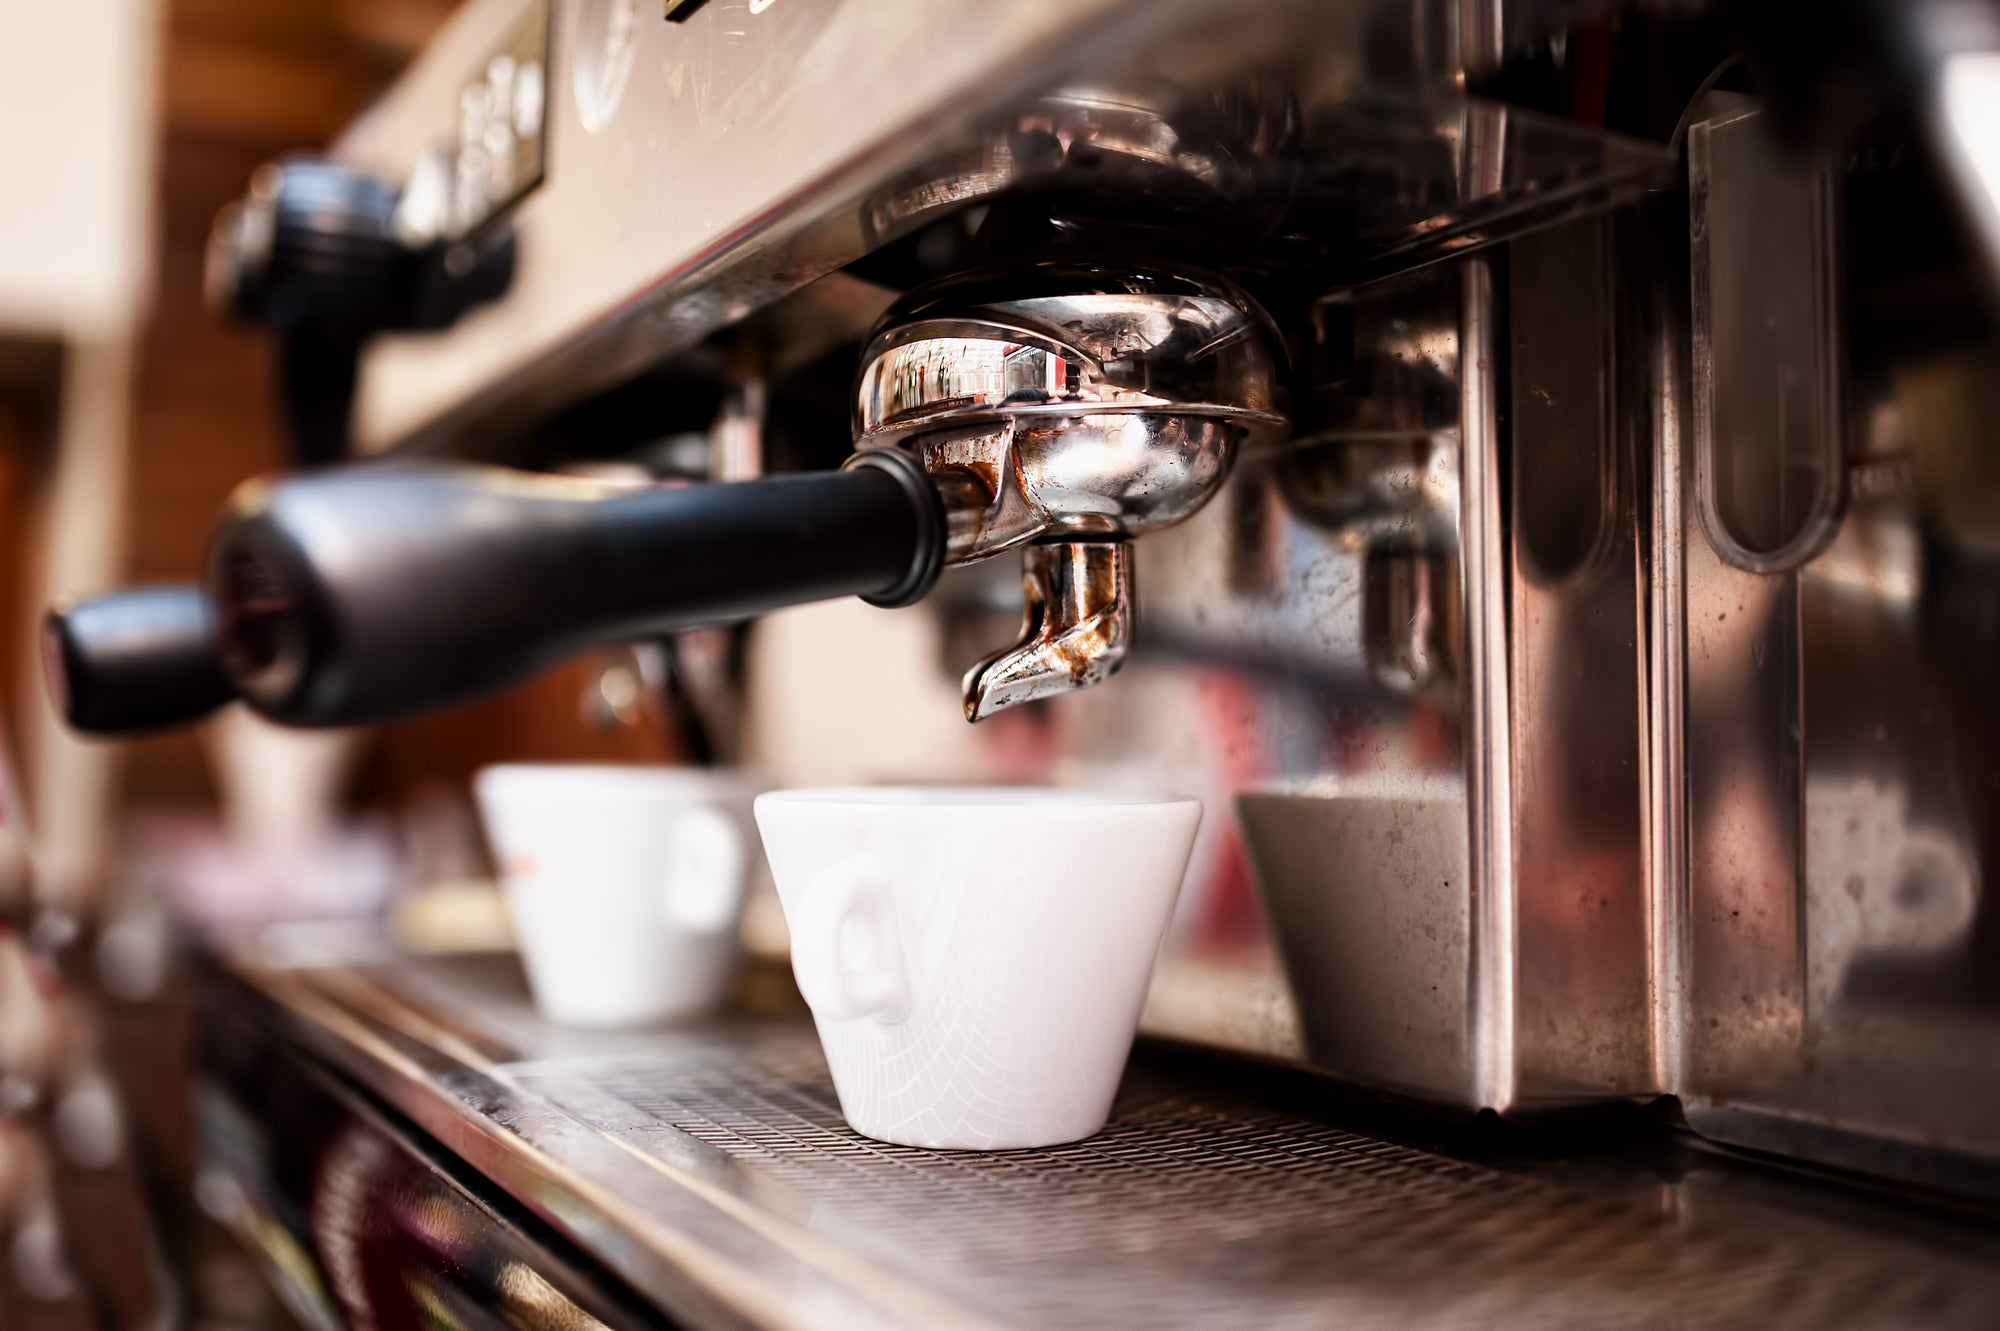 Vychutnávajte si voňavú kávu čo najdlhšie. Ako sa starať o kávovar?